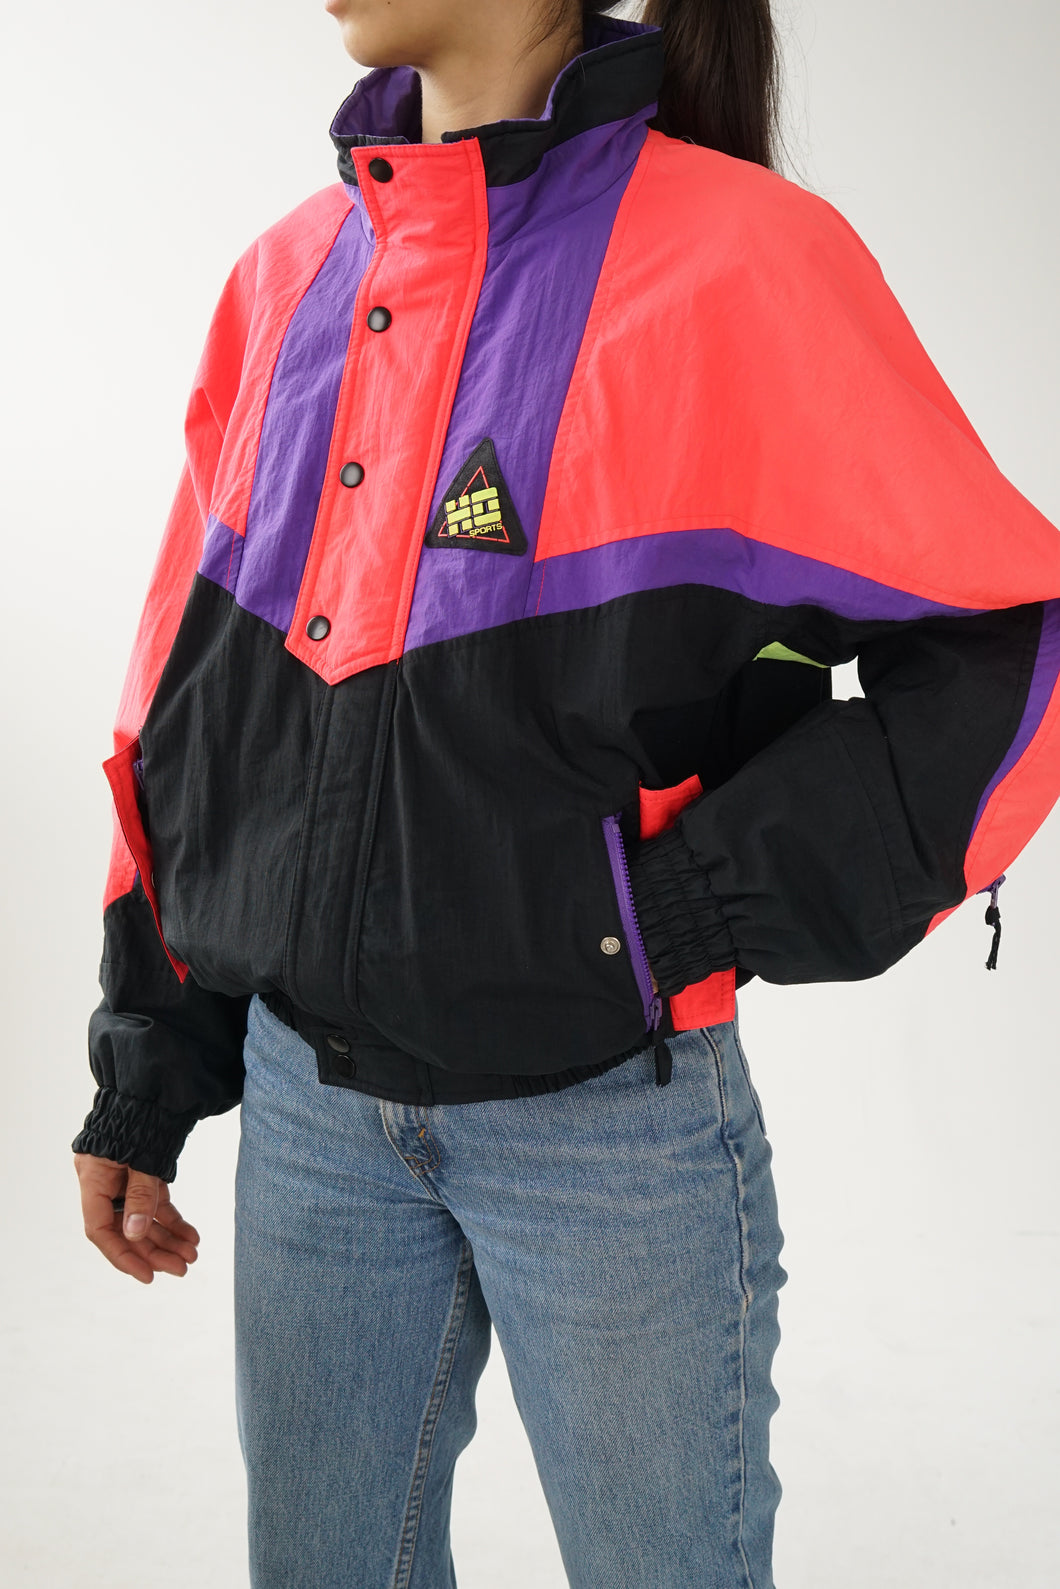 Manteau léger vintage avec int en coton Ho Sports noir et rose fluo unisex taille M